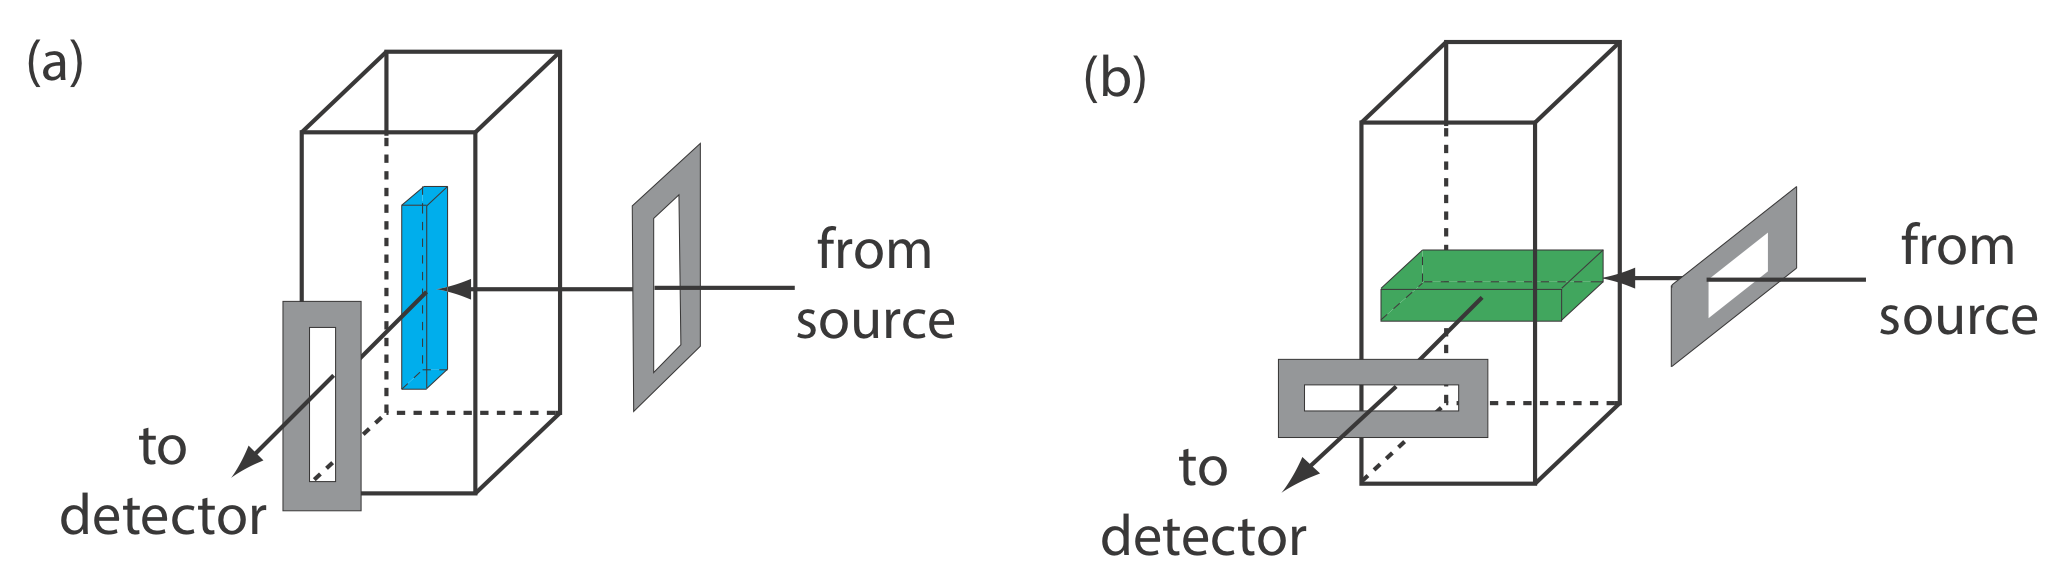 Uso de la orientación de la hendidura para cambiar el volumen a partir del cual se mide la fluorescencia.